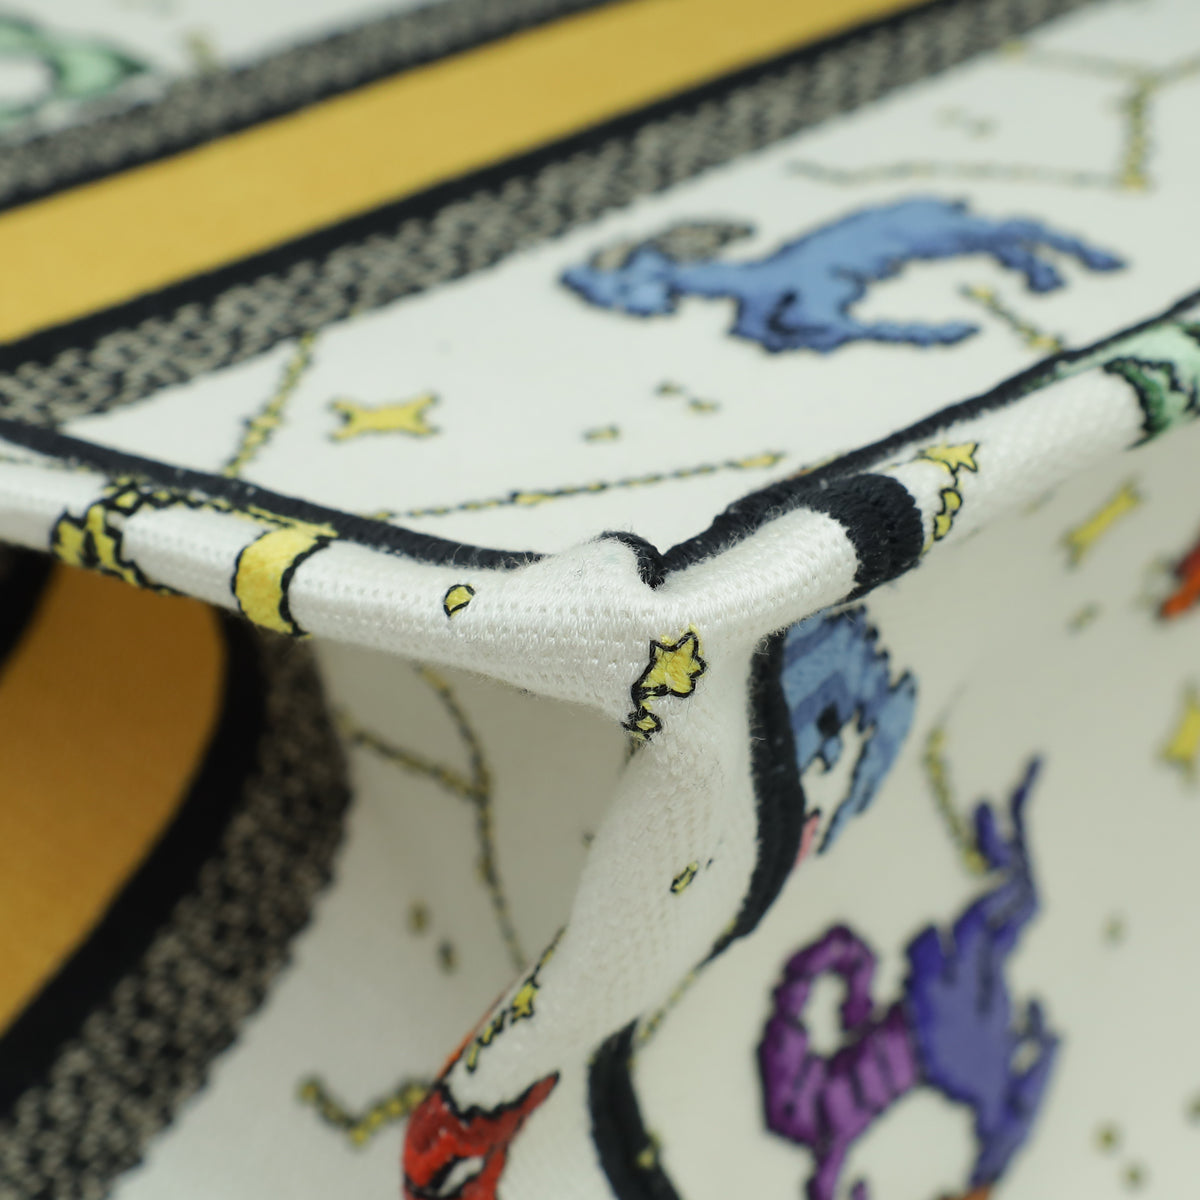 Christian Dior White Multicolor Pixel Zodiac Embroidery Small Book Tote Bag